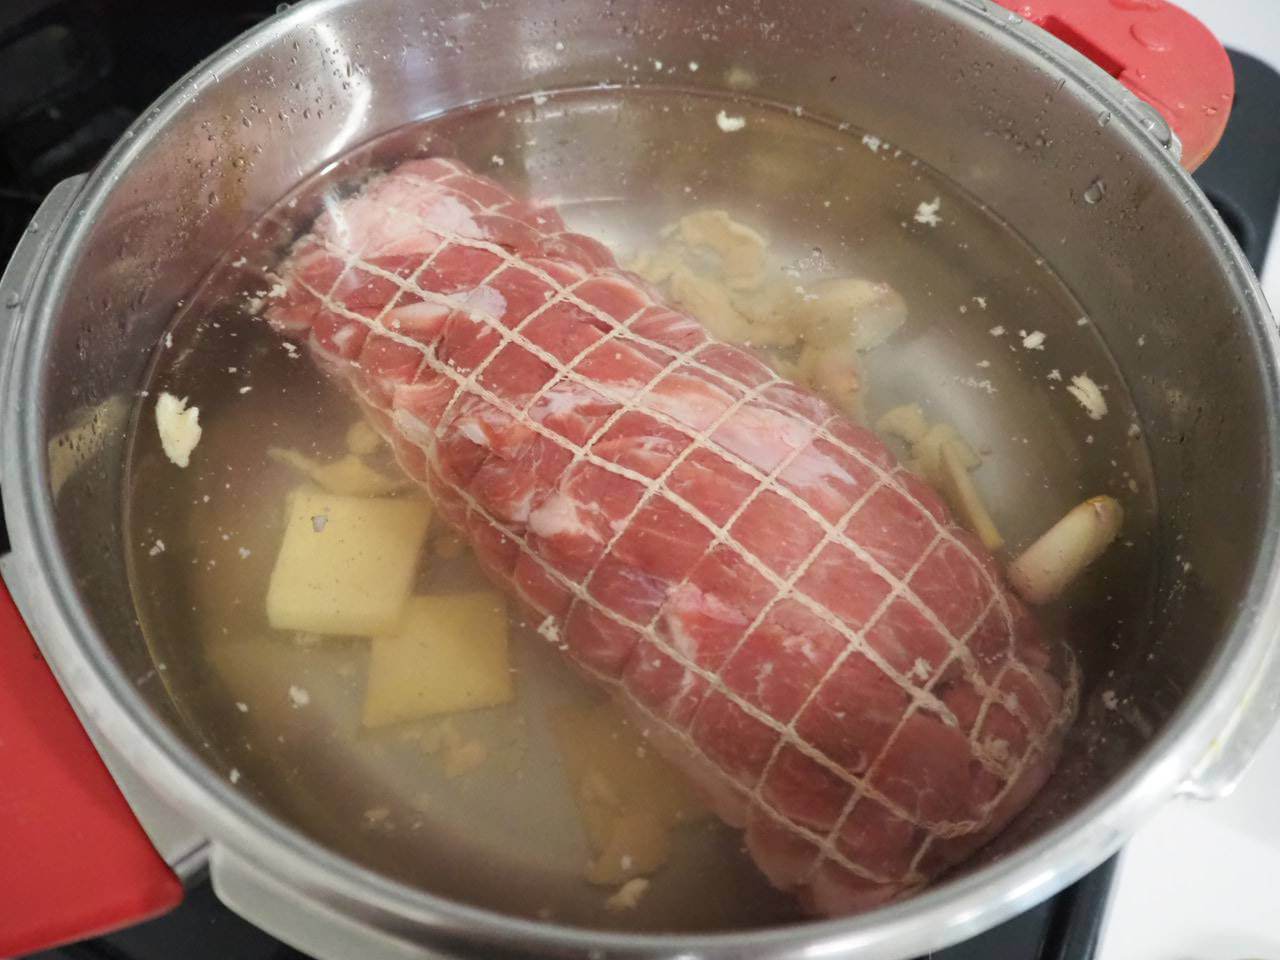 家二郎 煮豚 肩ロース 圧力鍋で二郎風豚の作り方 レシピ かっつ飯 飯テロ検定準2級保持者のバズり飯 インスタ界最強の男飯